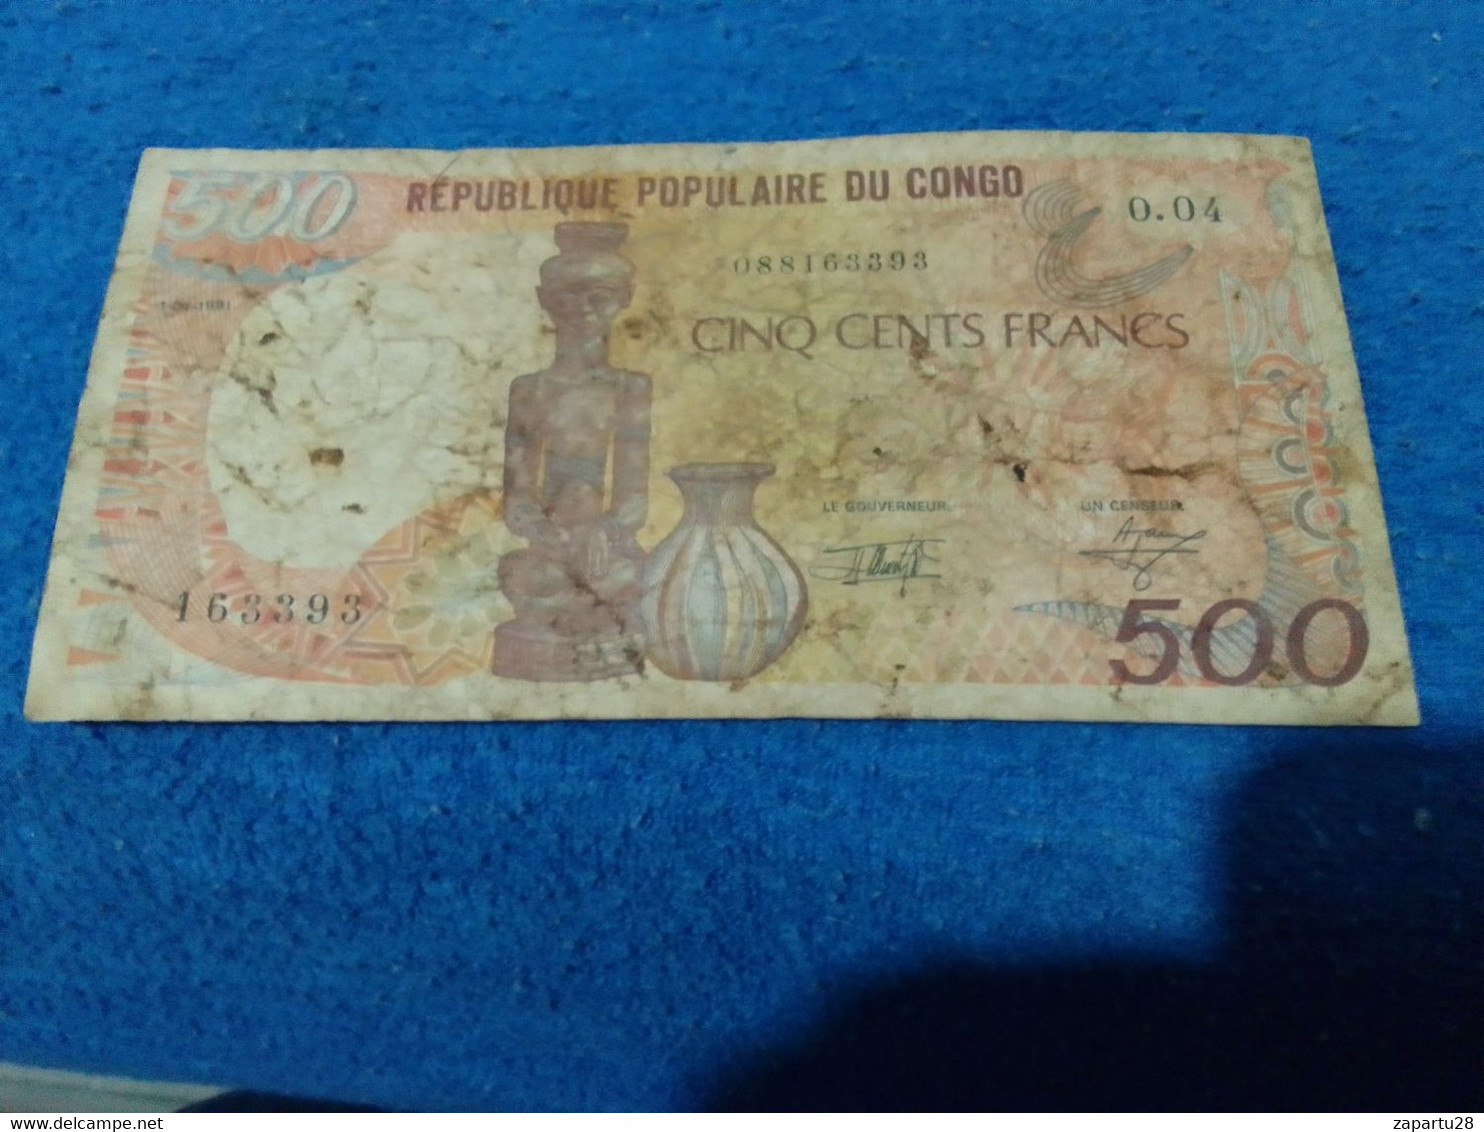 KONGO- 500 FRANK - Comores